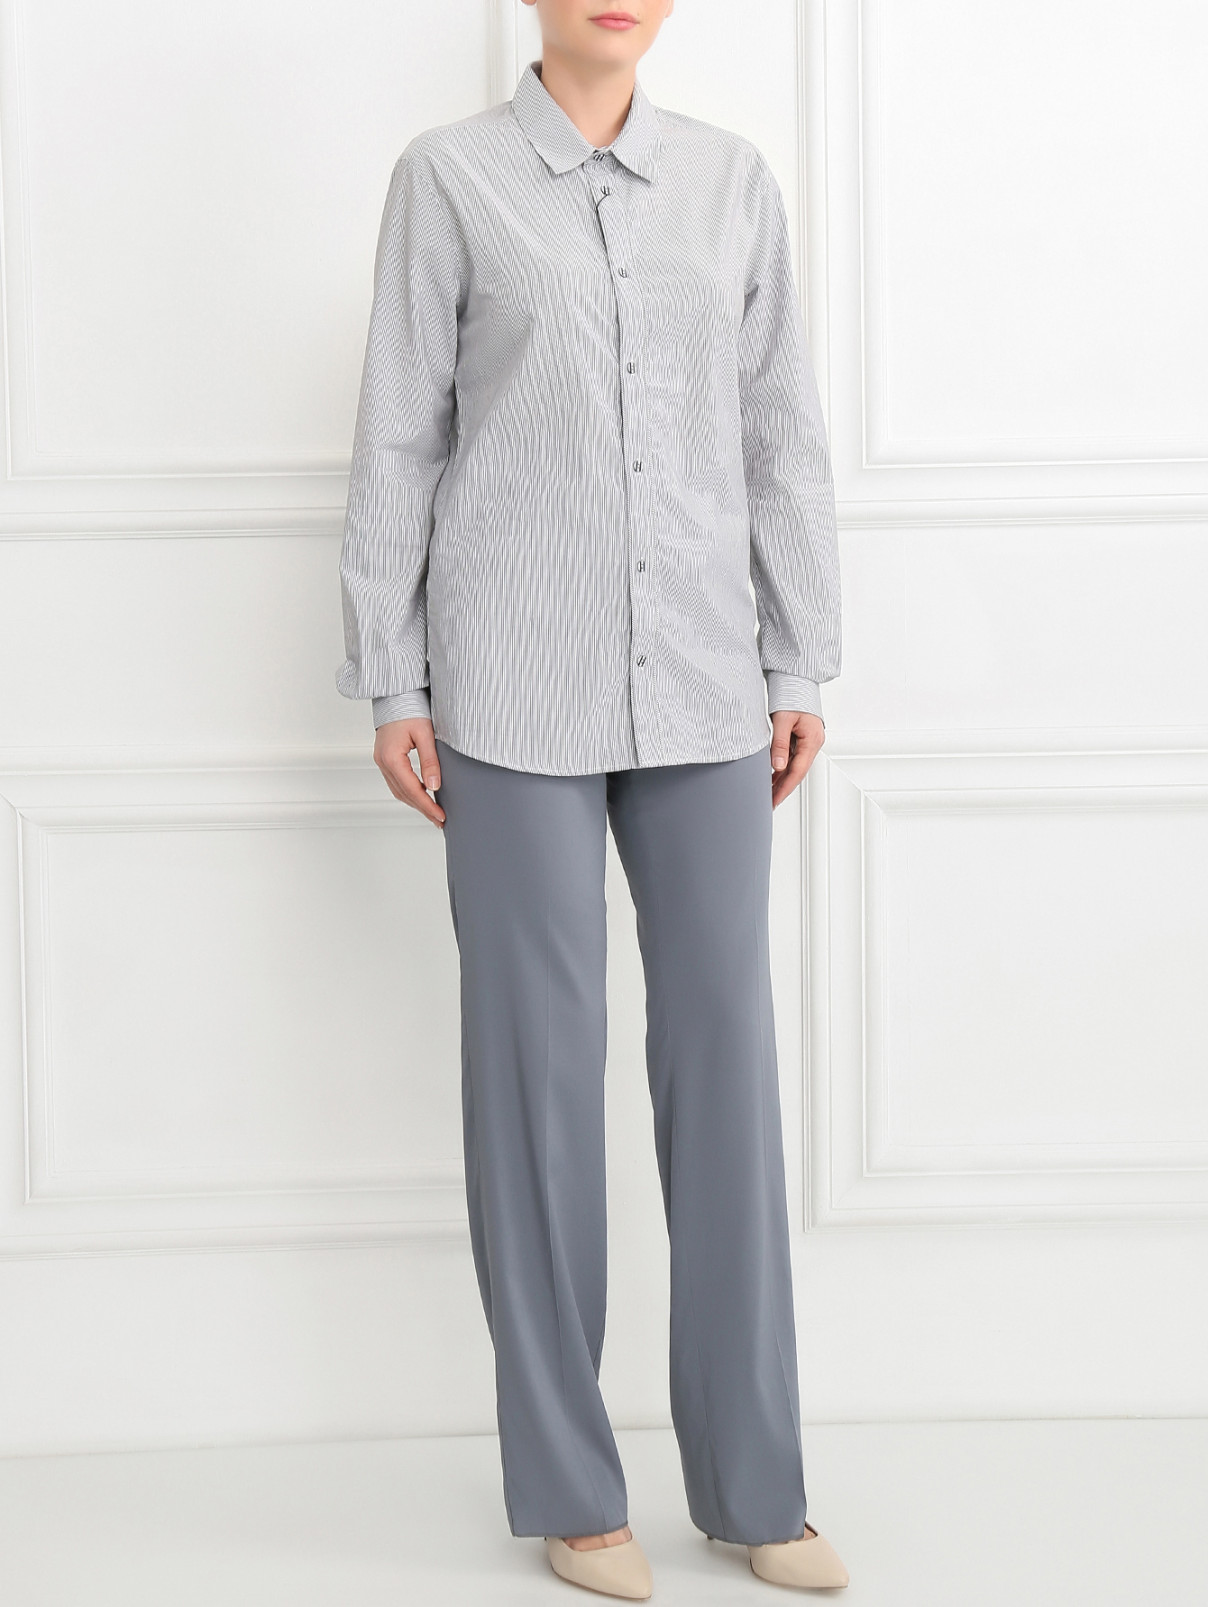 Широкие брюки изо льна и шелка Emporio Armani  –  Модель Общий вид  – Цвет:  Синий